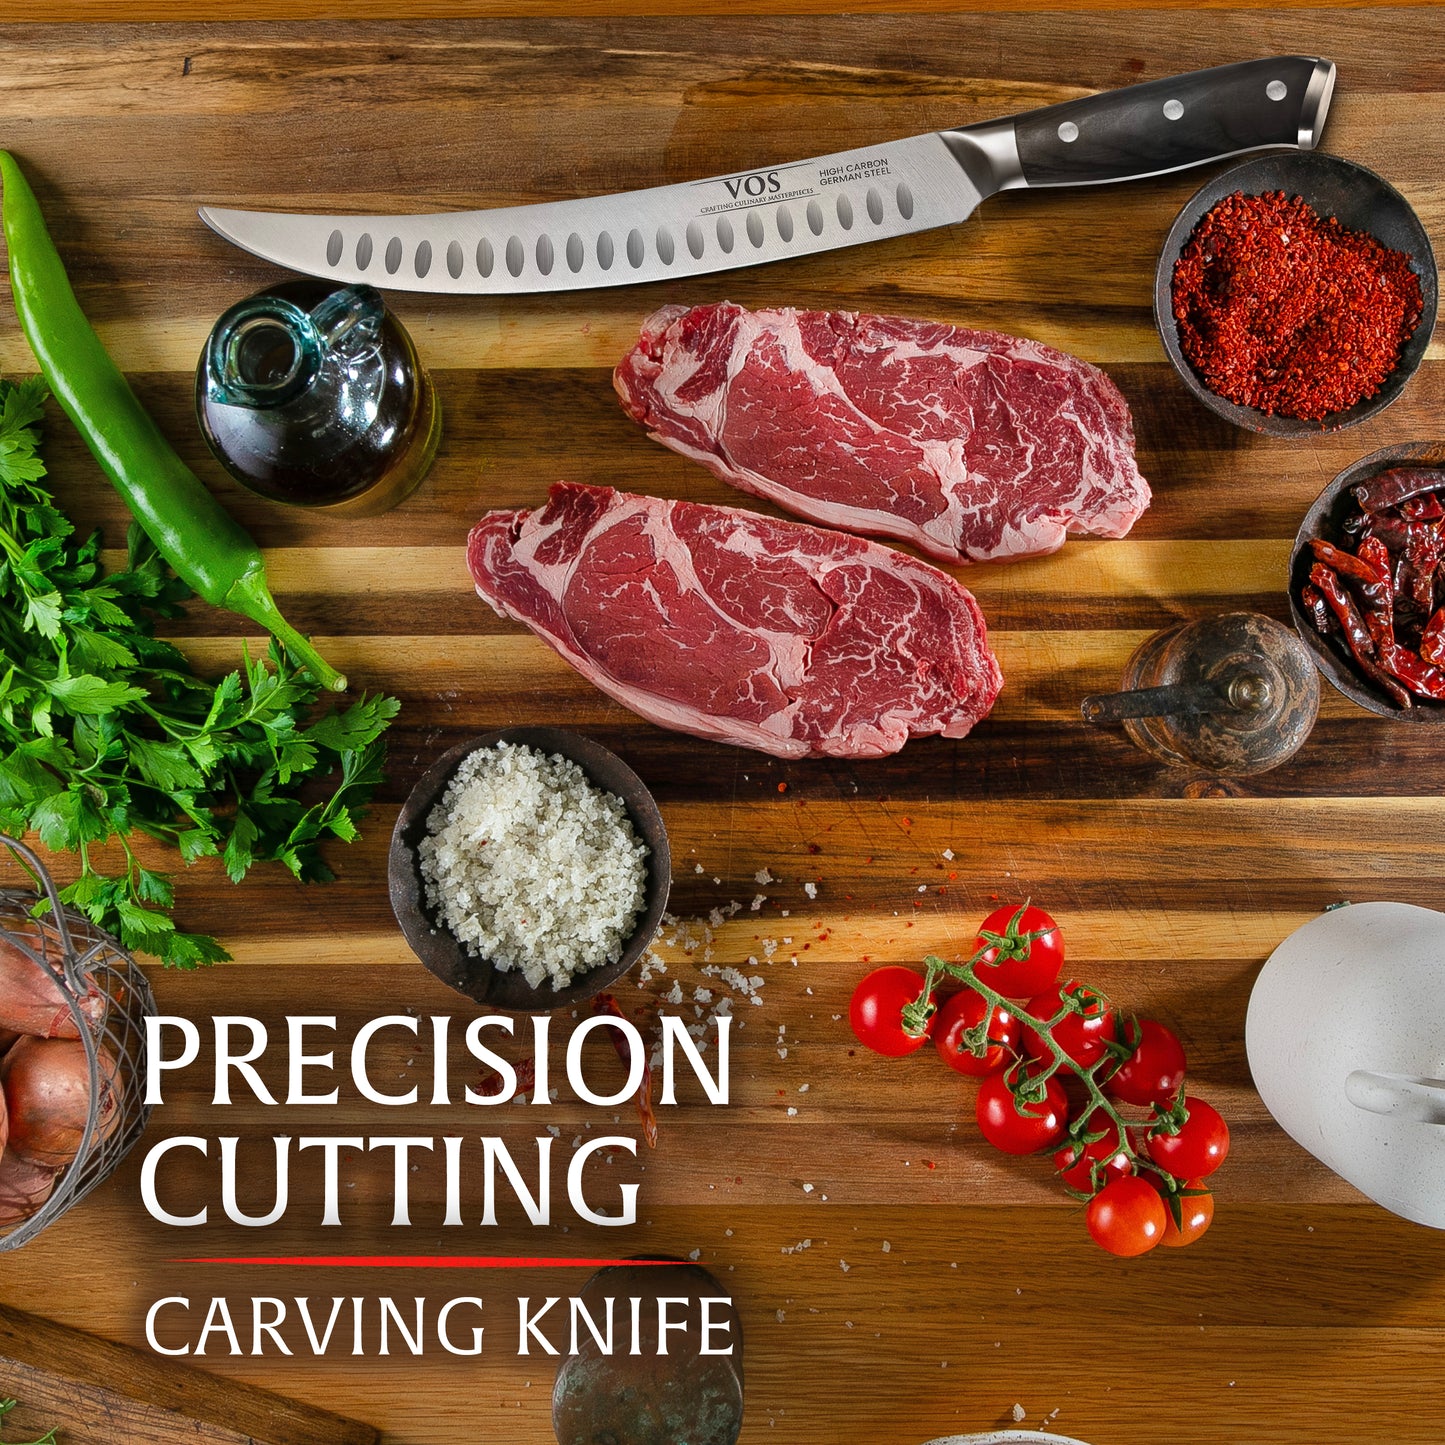 10" Carving Knife Brisket Knife Butcher Knife Stainless Steel Slicing Knife